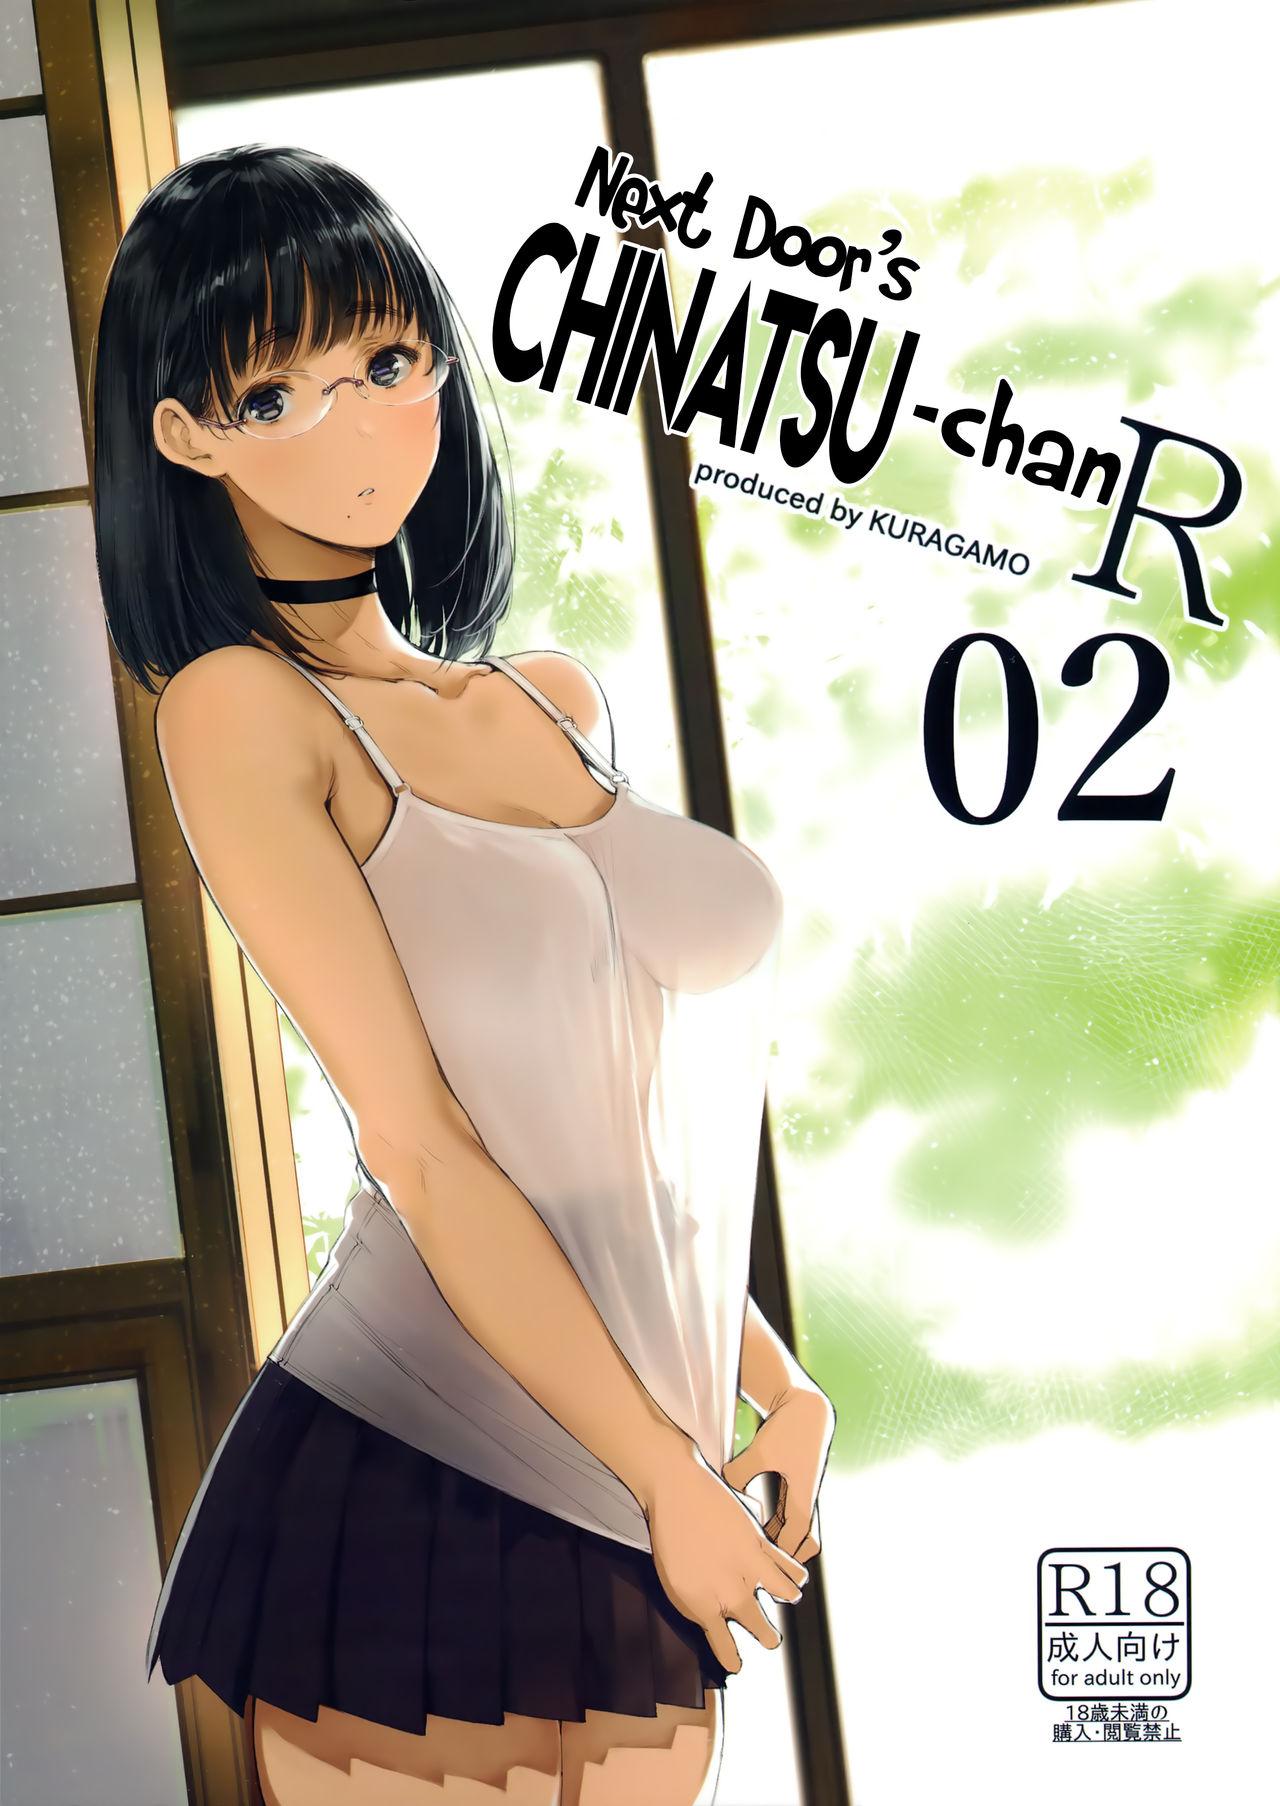 (C93) [Kuragamo (Tukinowagamo)] Tonari no Chinatsu-chan R 02 | Next Door's Chinatsu-chan R 02 [English] [Team Koinaka] 0